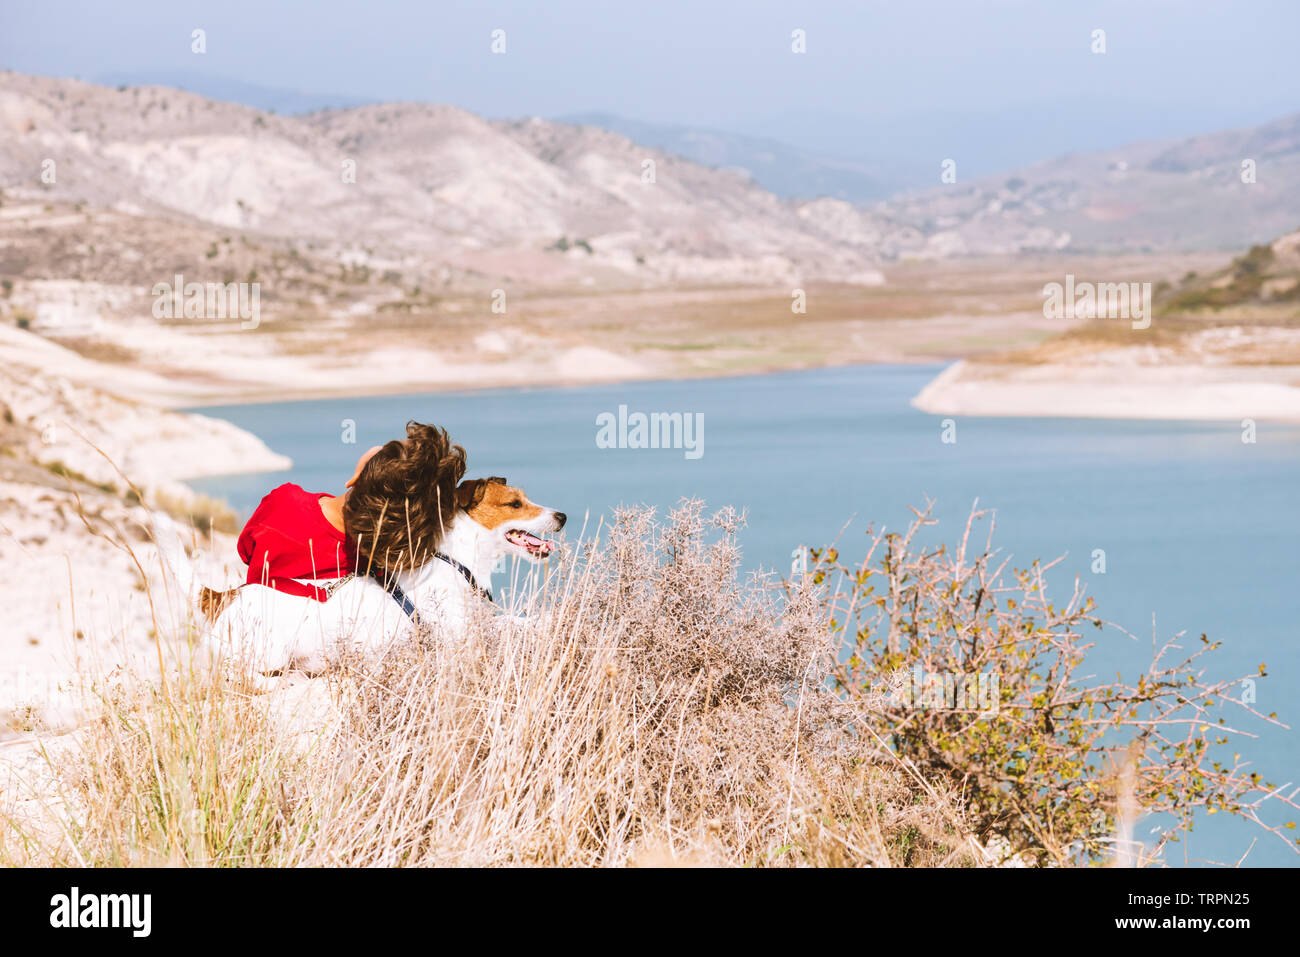 Reisen, Familie und das häusliche Leben Konzept-kid und seinem Haustier Hund entspannende oben am Berg am schönen Blick auf das Tal auf der Suche Stockfoto